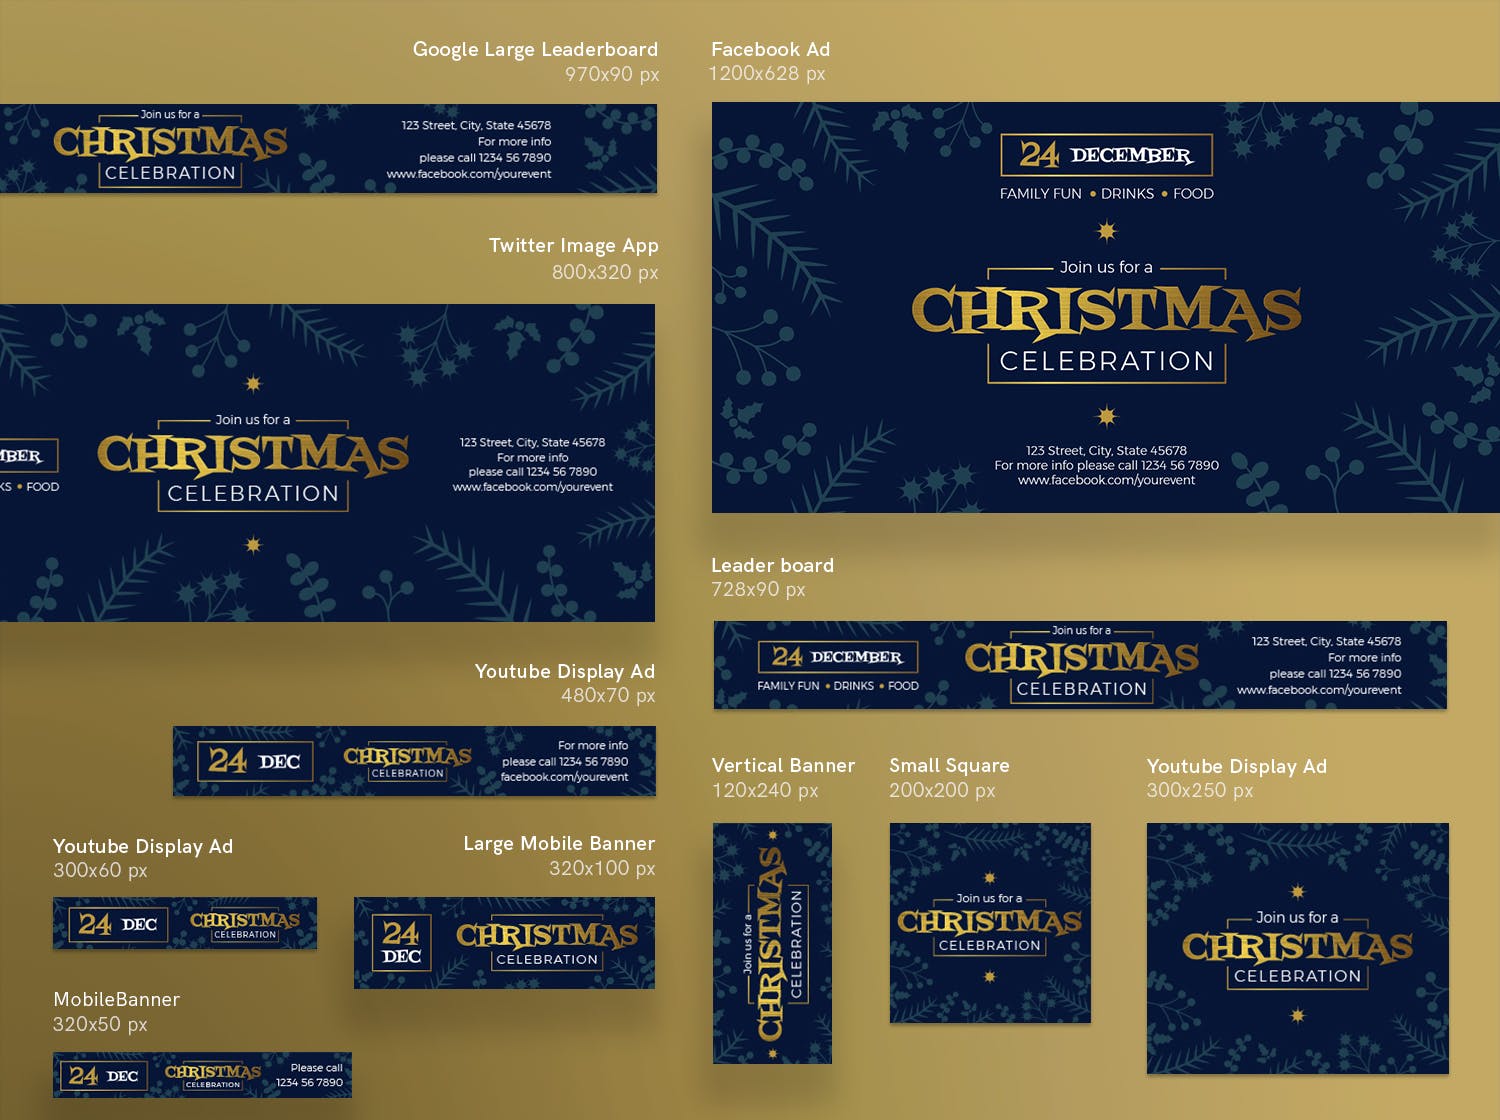 圣诞庆祝活动/圣诞促销广告Banner设计模板 Christmas Celebration Banner Pack Template插图(2)